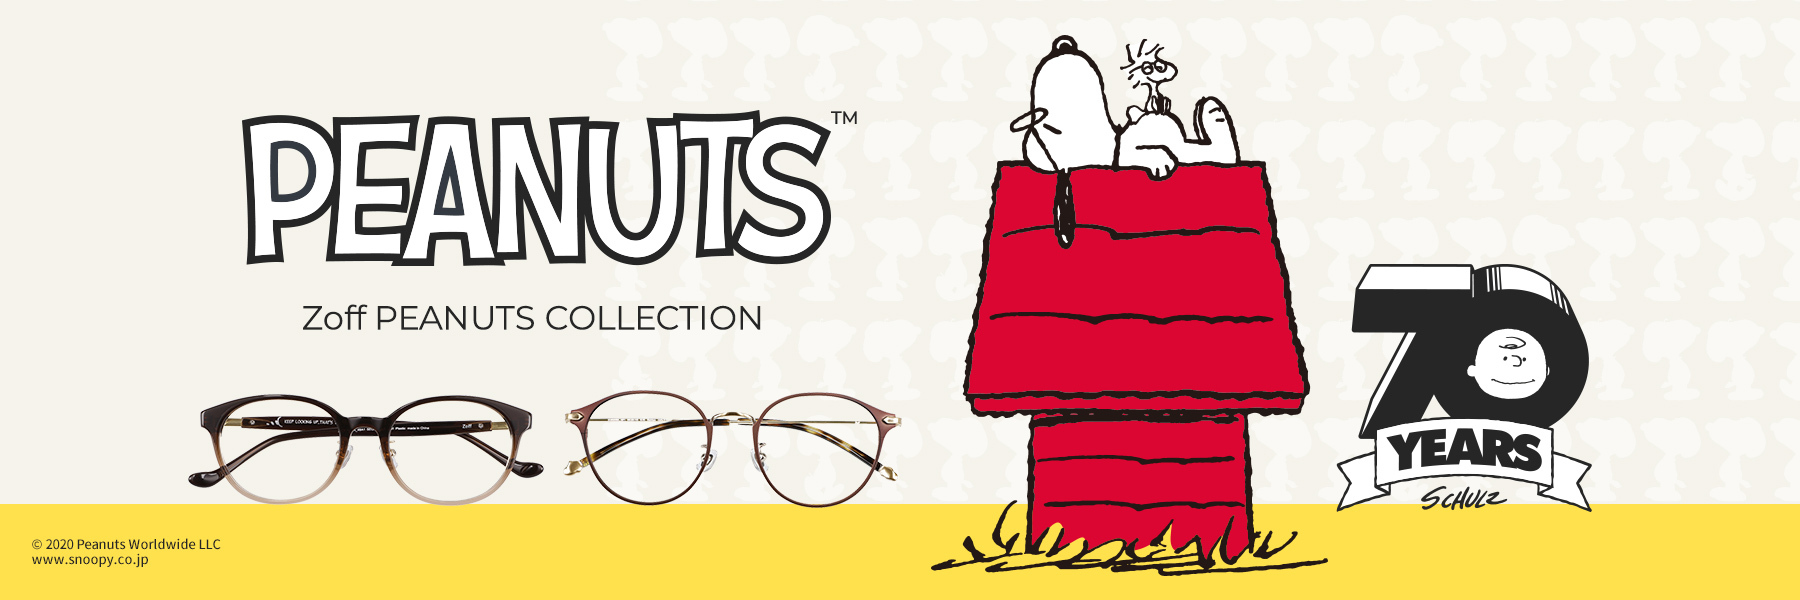 Zoffとはじめてのコラボレーションが実現 Zoff Peanuts Collection 株式会社インターメスティックのプレスリリース